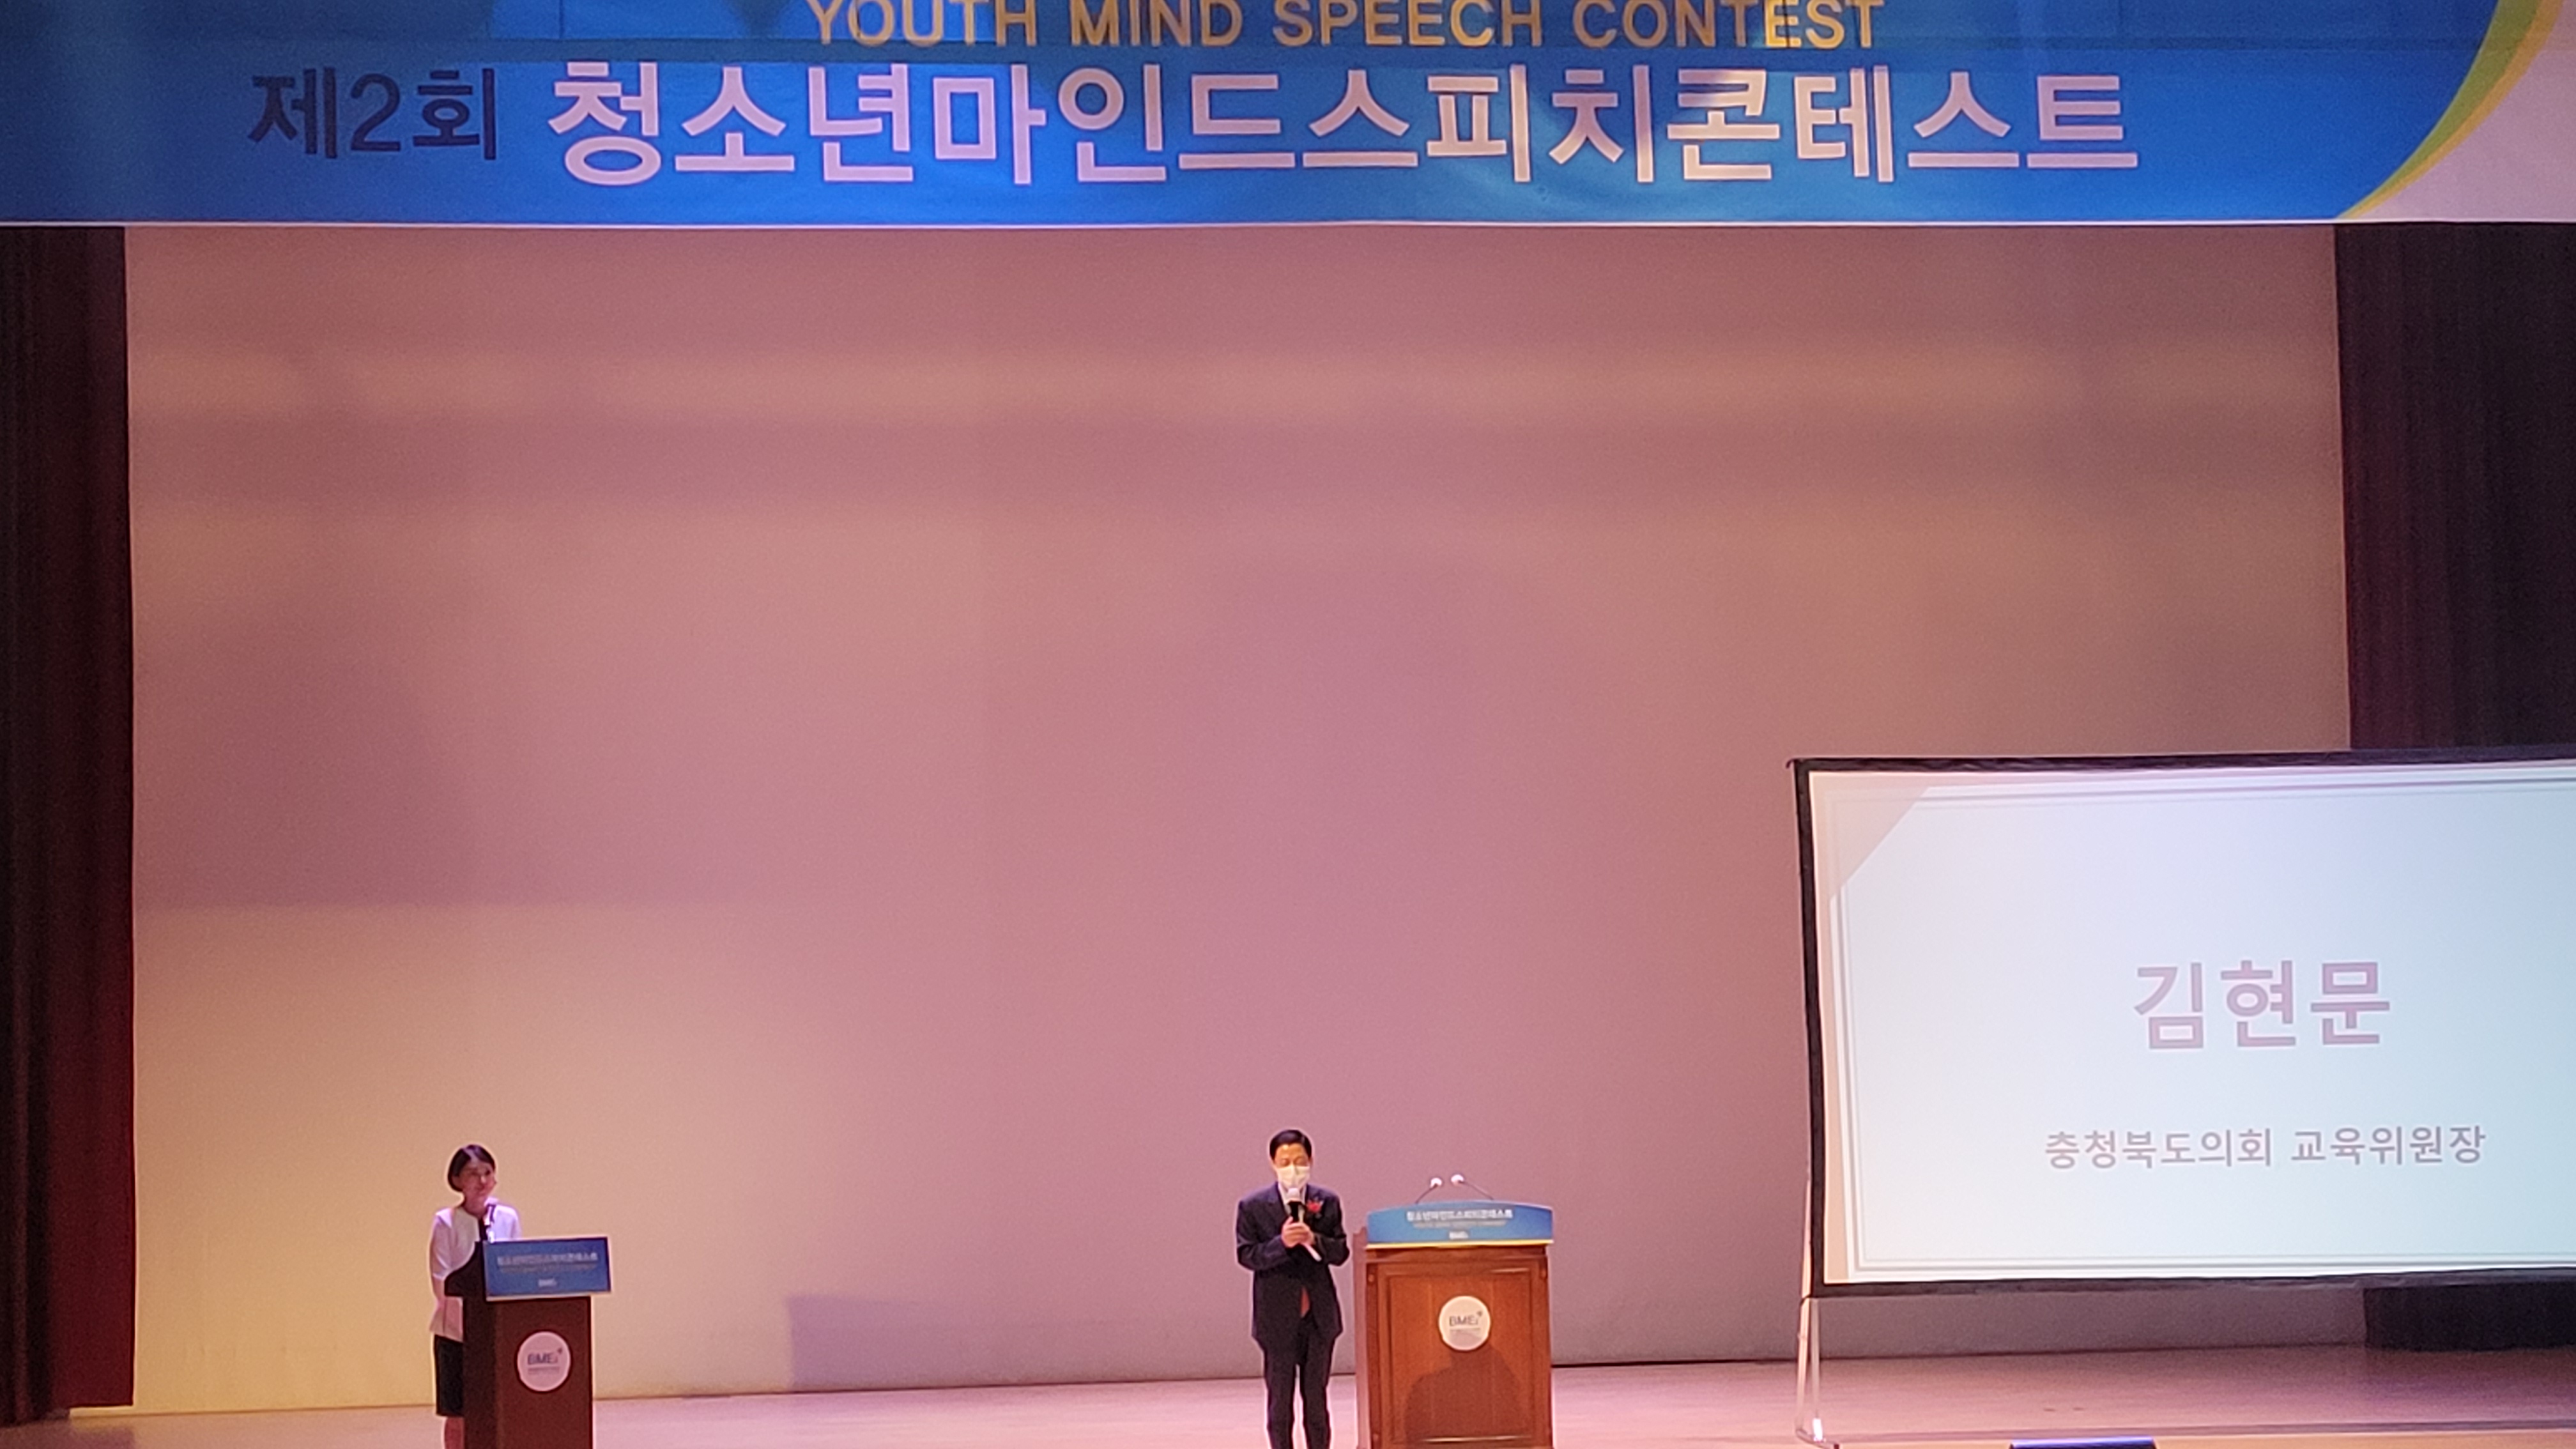 김현문 의원, 제2회 청소년마인드 스피치콘테스트 축사 - 2